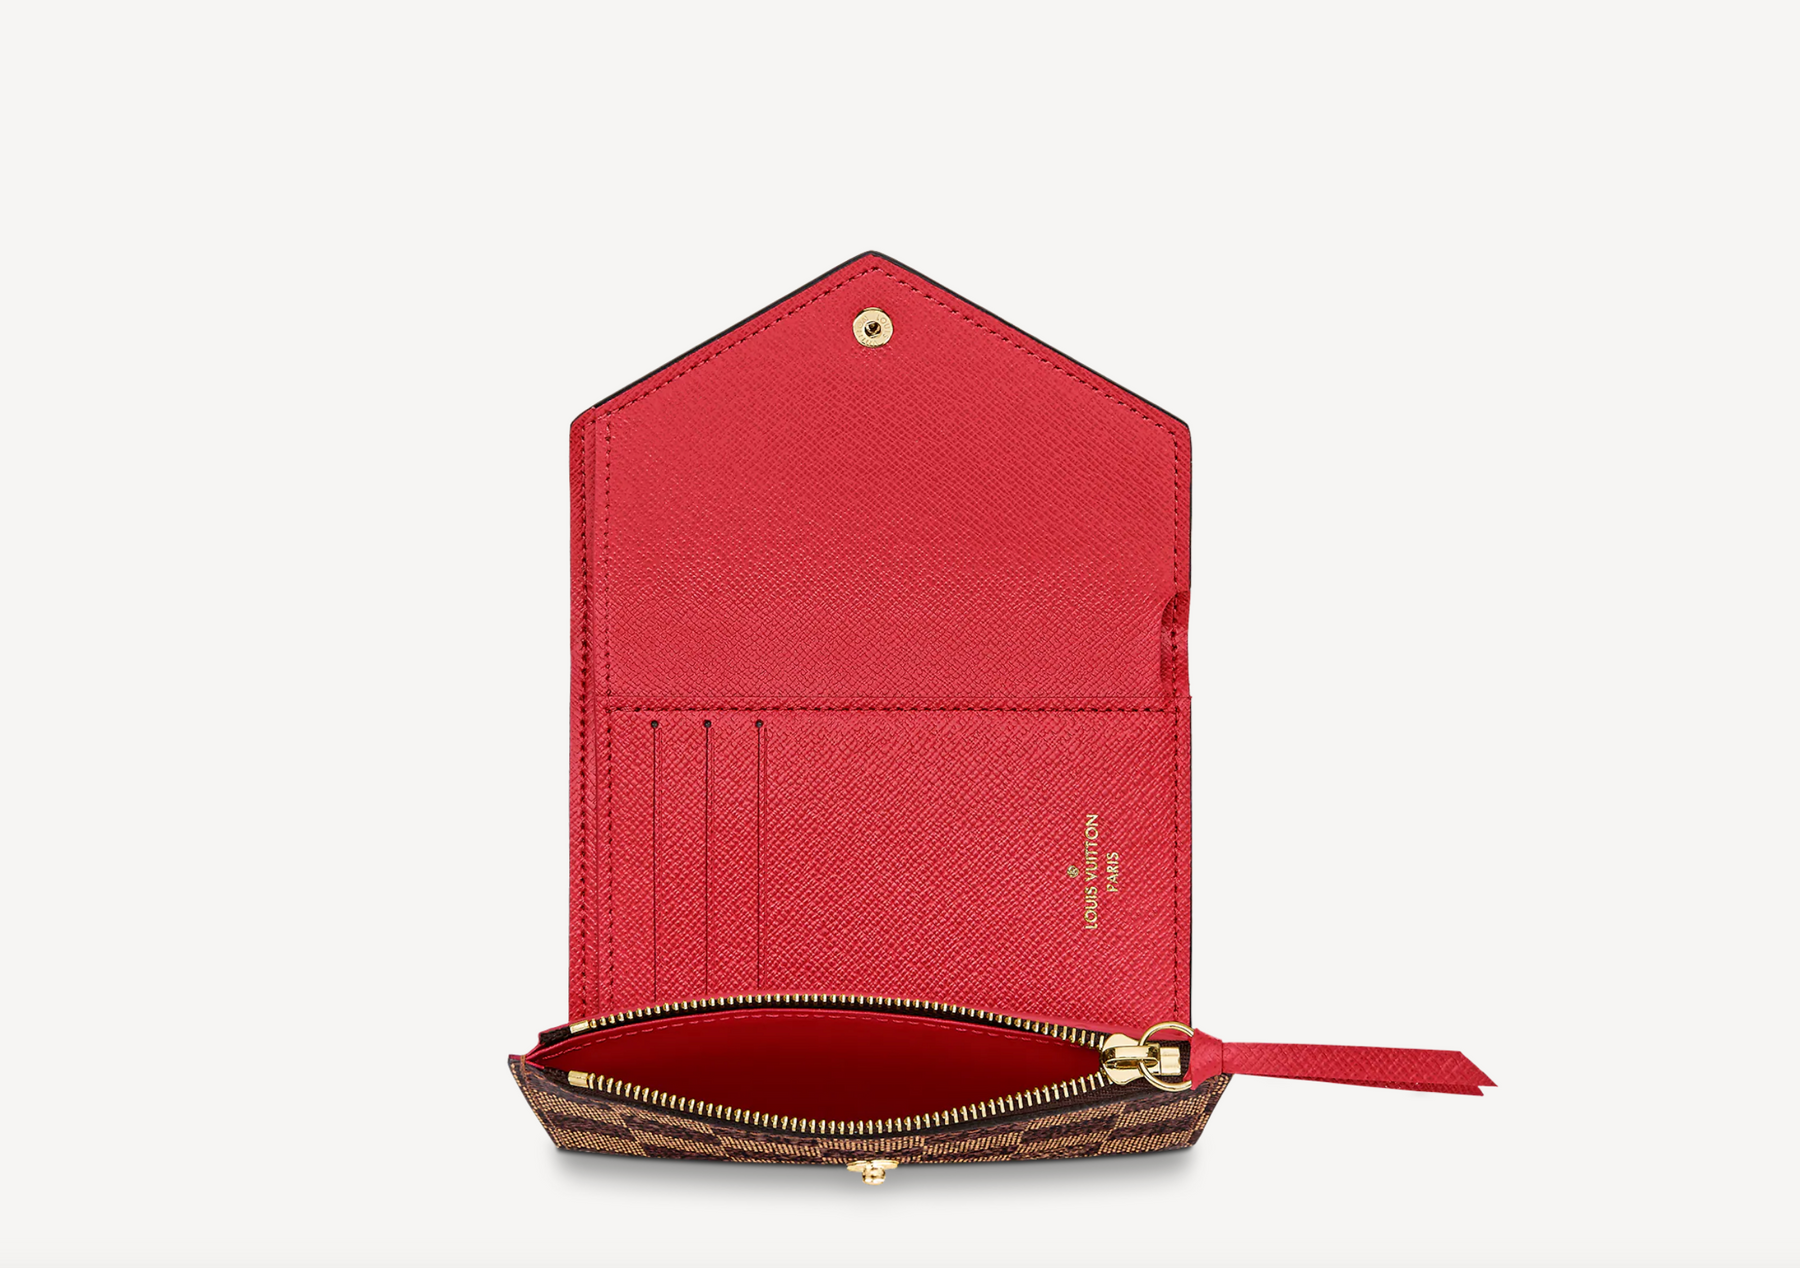 Louis Vuitton damier ebene Victorine wallet rose poudre